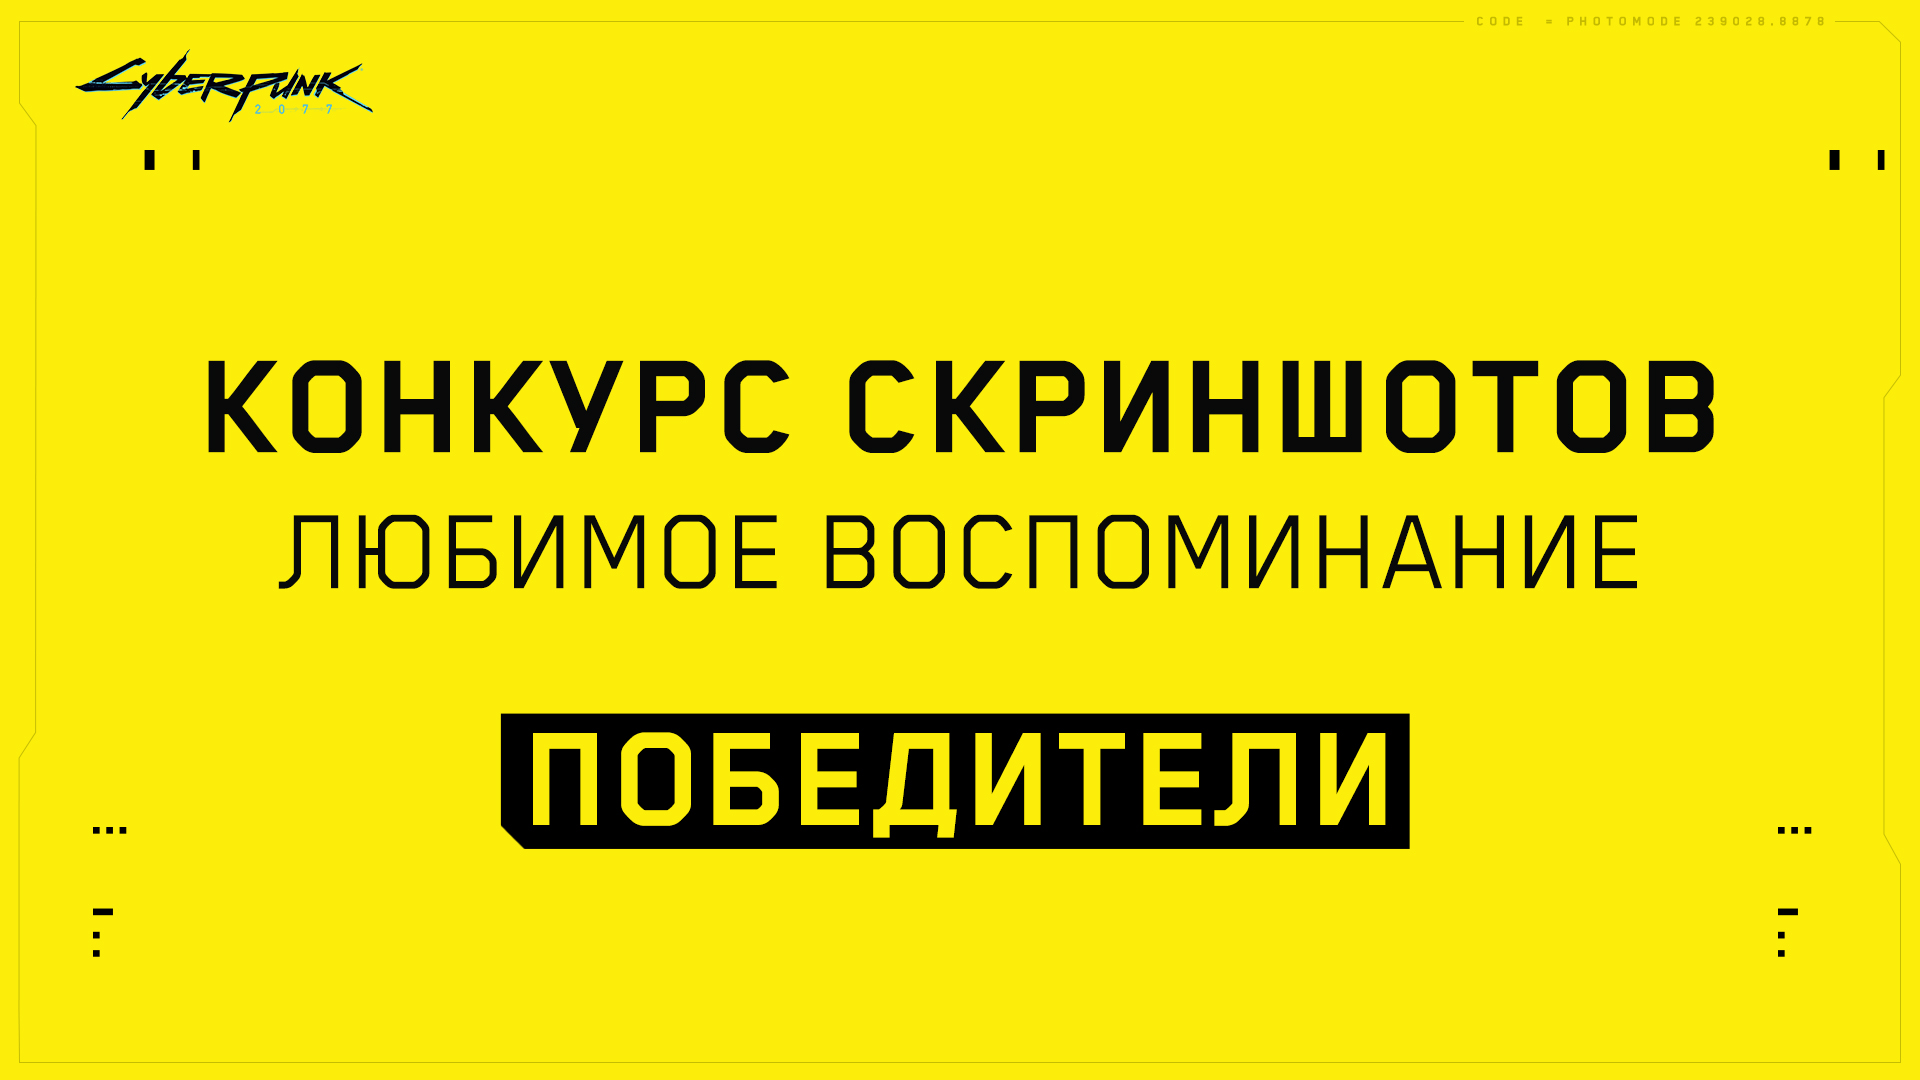 RUS_PHOTOMODE_WINNERS_1920x1080 (1).jpg